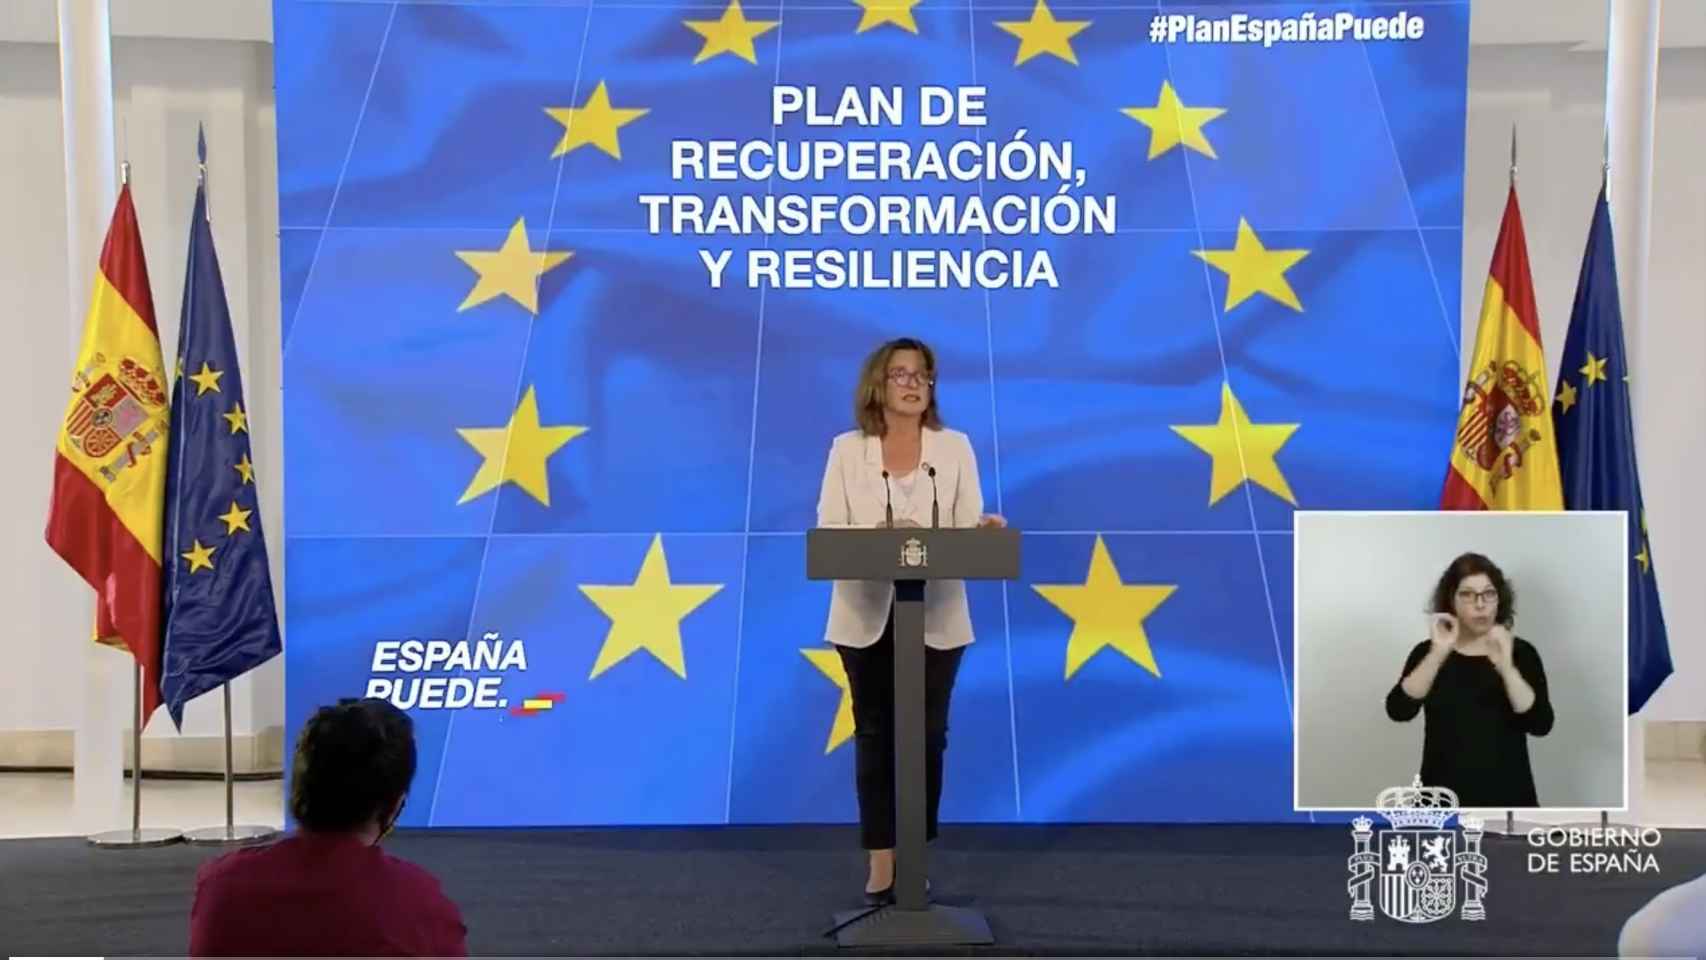 La ministra de Transición Ecológica, Teresa Ribera, presenta los planes de España en la materia.